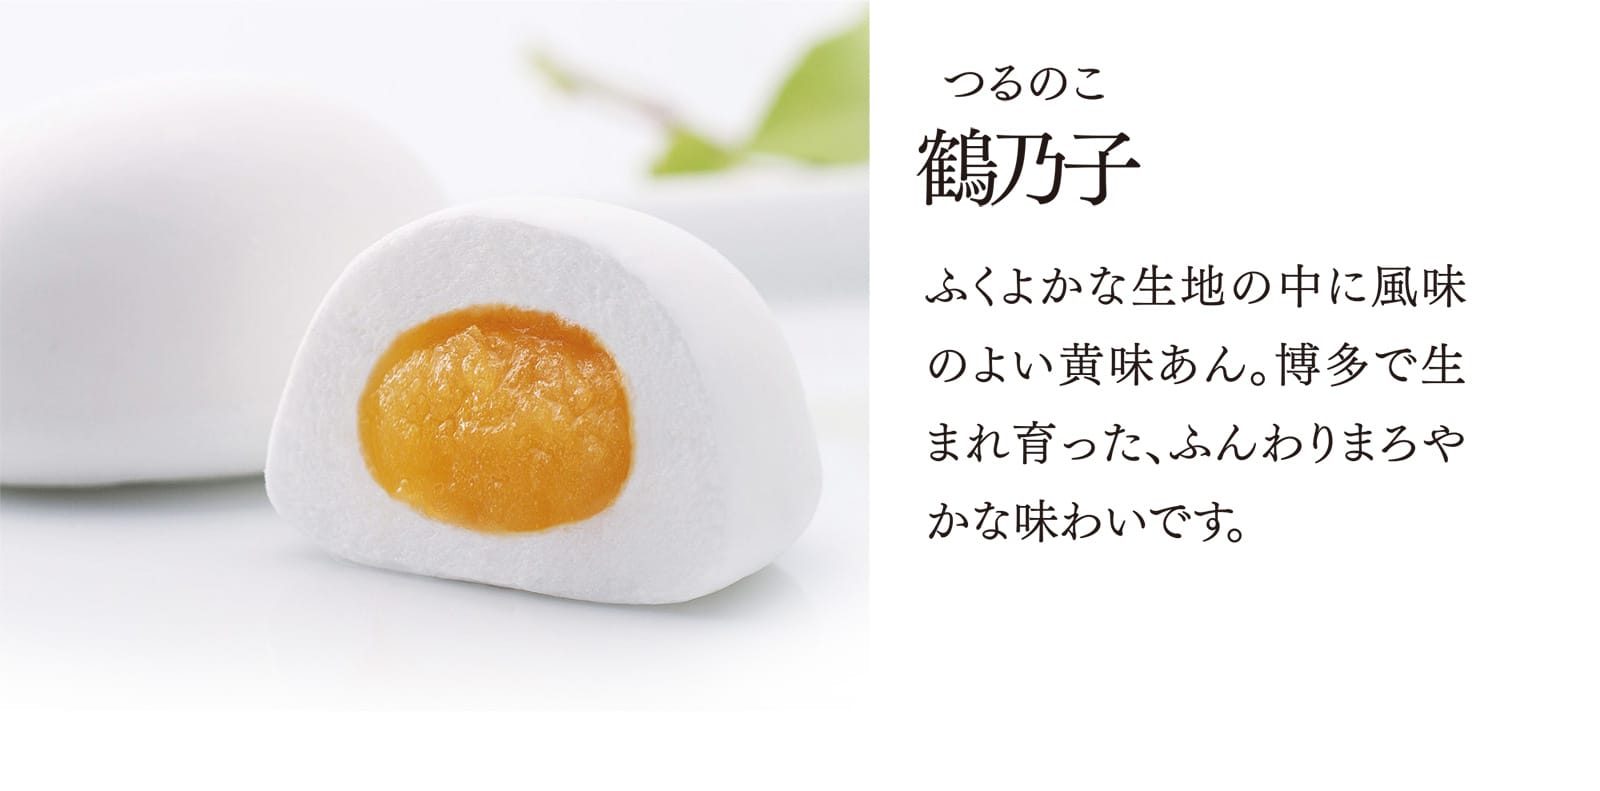 【鶴乃子】ふくよかな生地の中に風味のよい黄味あん。博多で生まれ育った、ふんわりまろやかな味わいです。